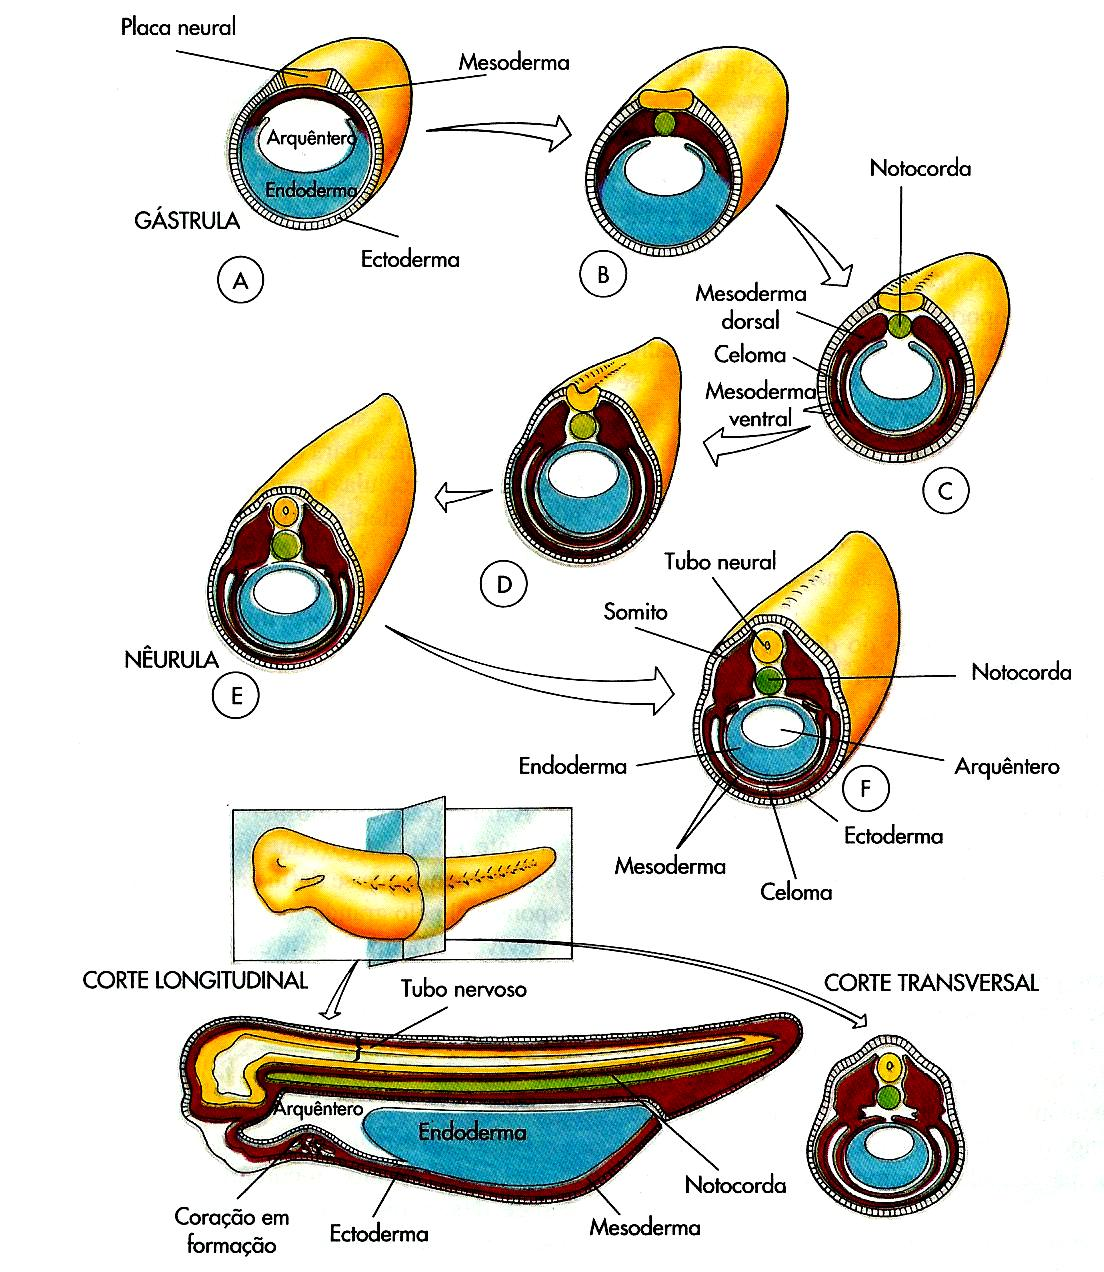 C1.2) Embriogénese em Vertebrados Terrestres: O desenvolvimento embrionário em ambiente terrestres deve-se a condições especiais: - fecundação interna (maior economia de gâmetas femininos); - os ovos